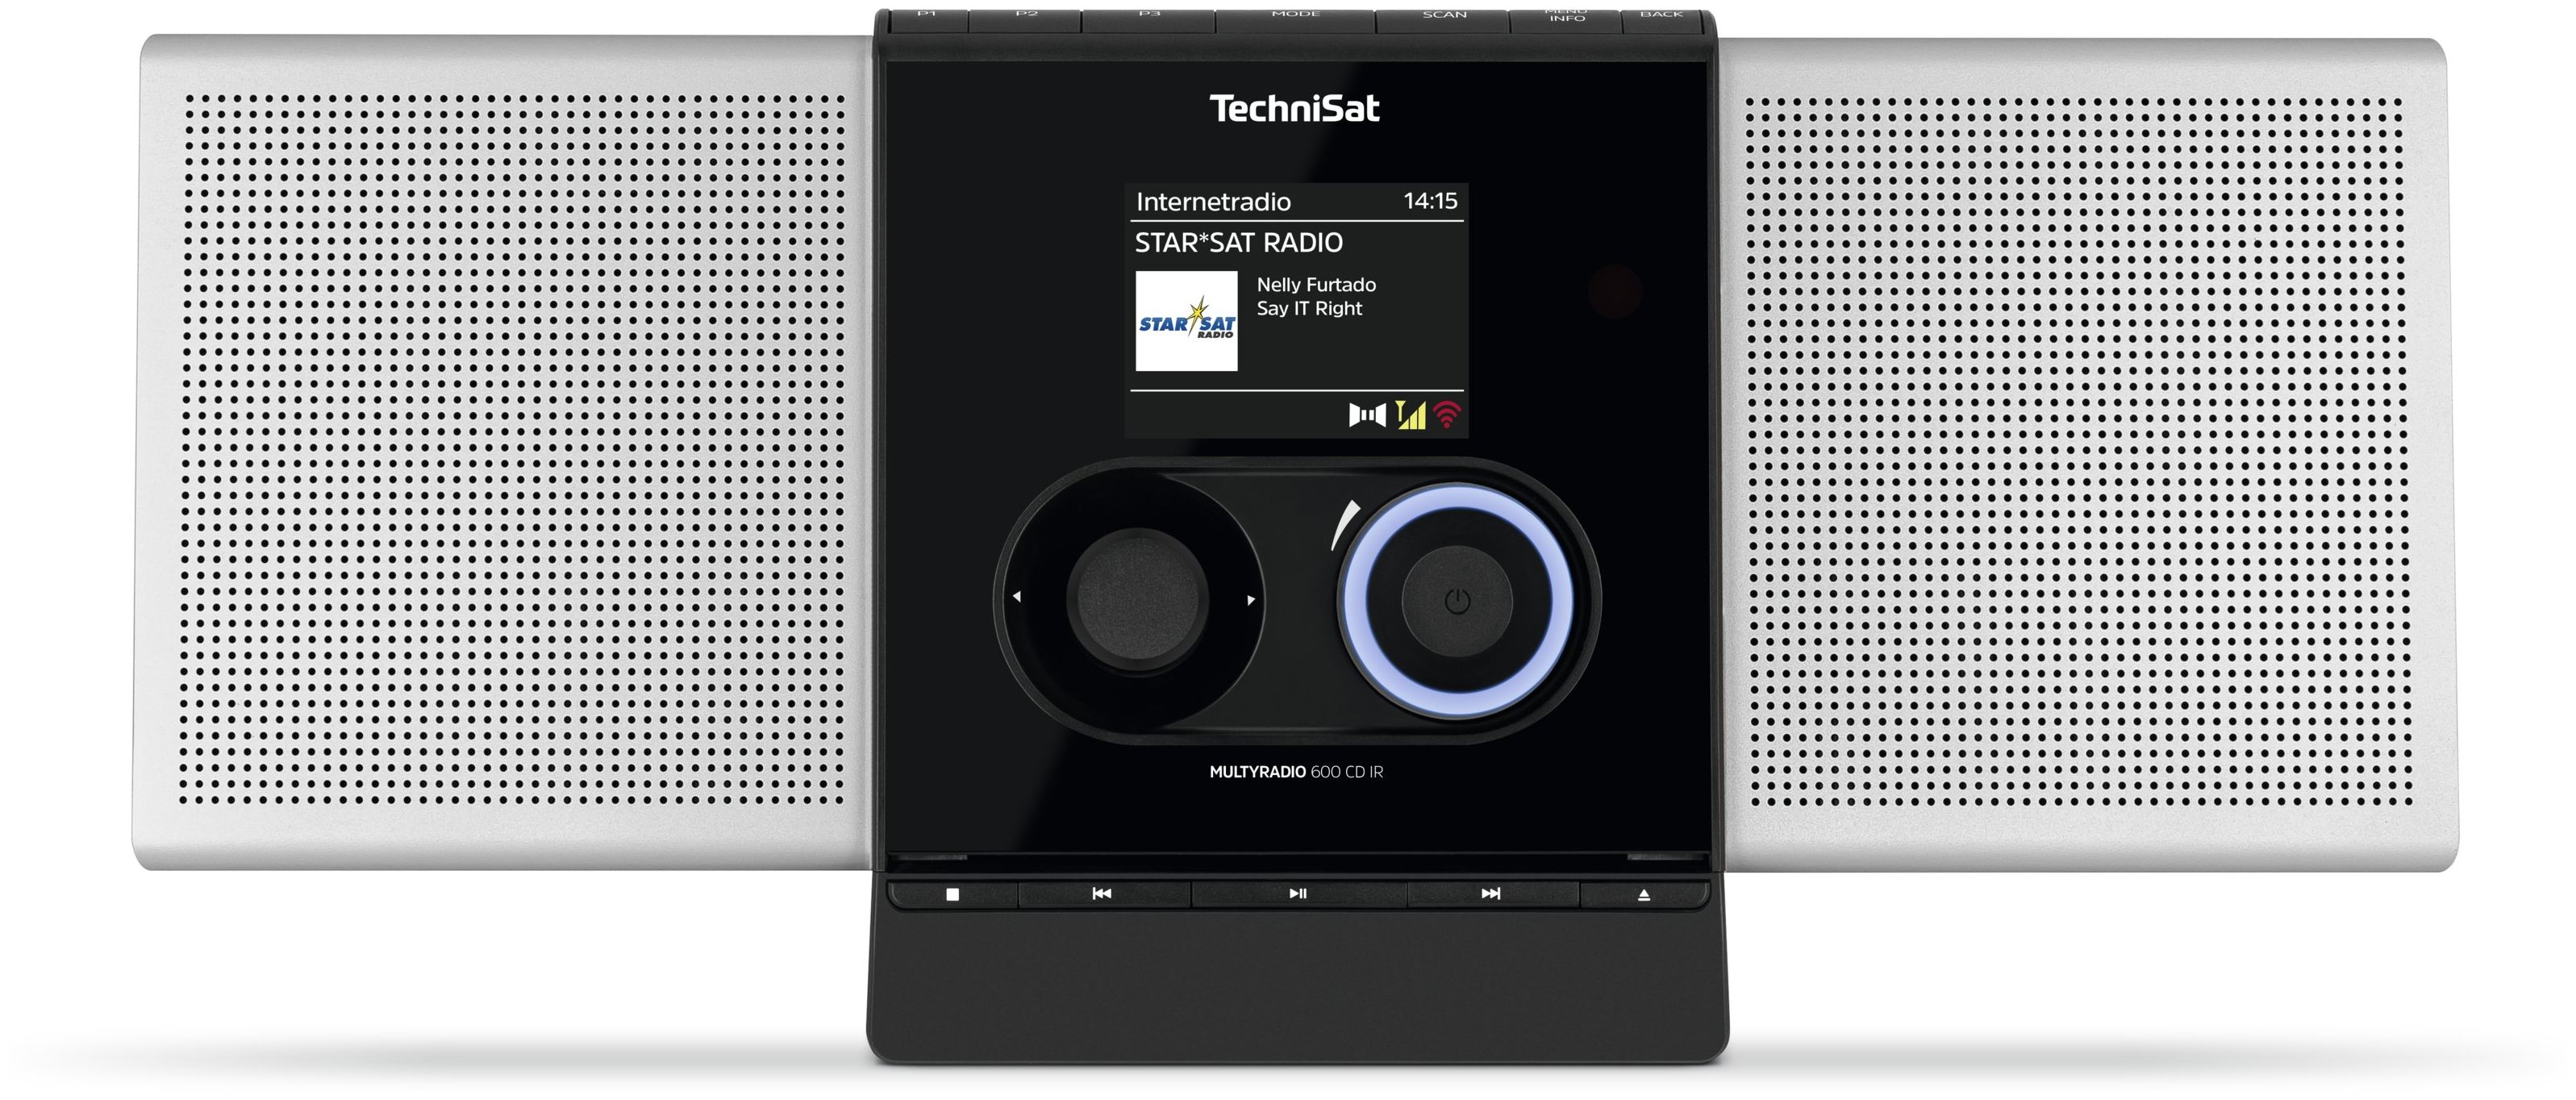 TechniSat Multyradio 600 CdIr Bluetooth DAB+, UKW Internet Radio (Schwarz,  Silber) von expert Technomarkt